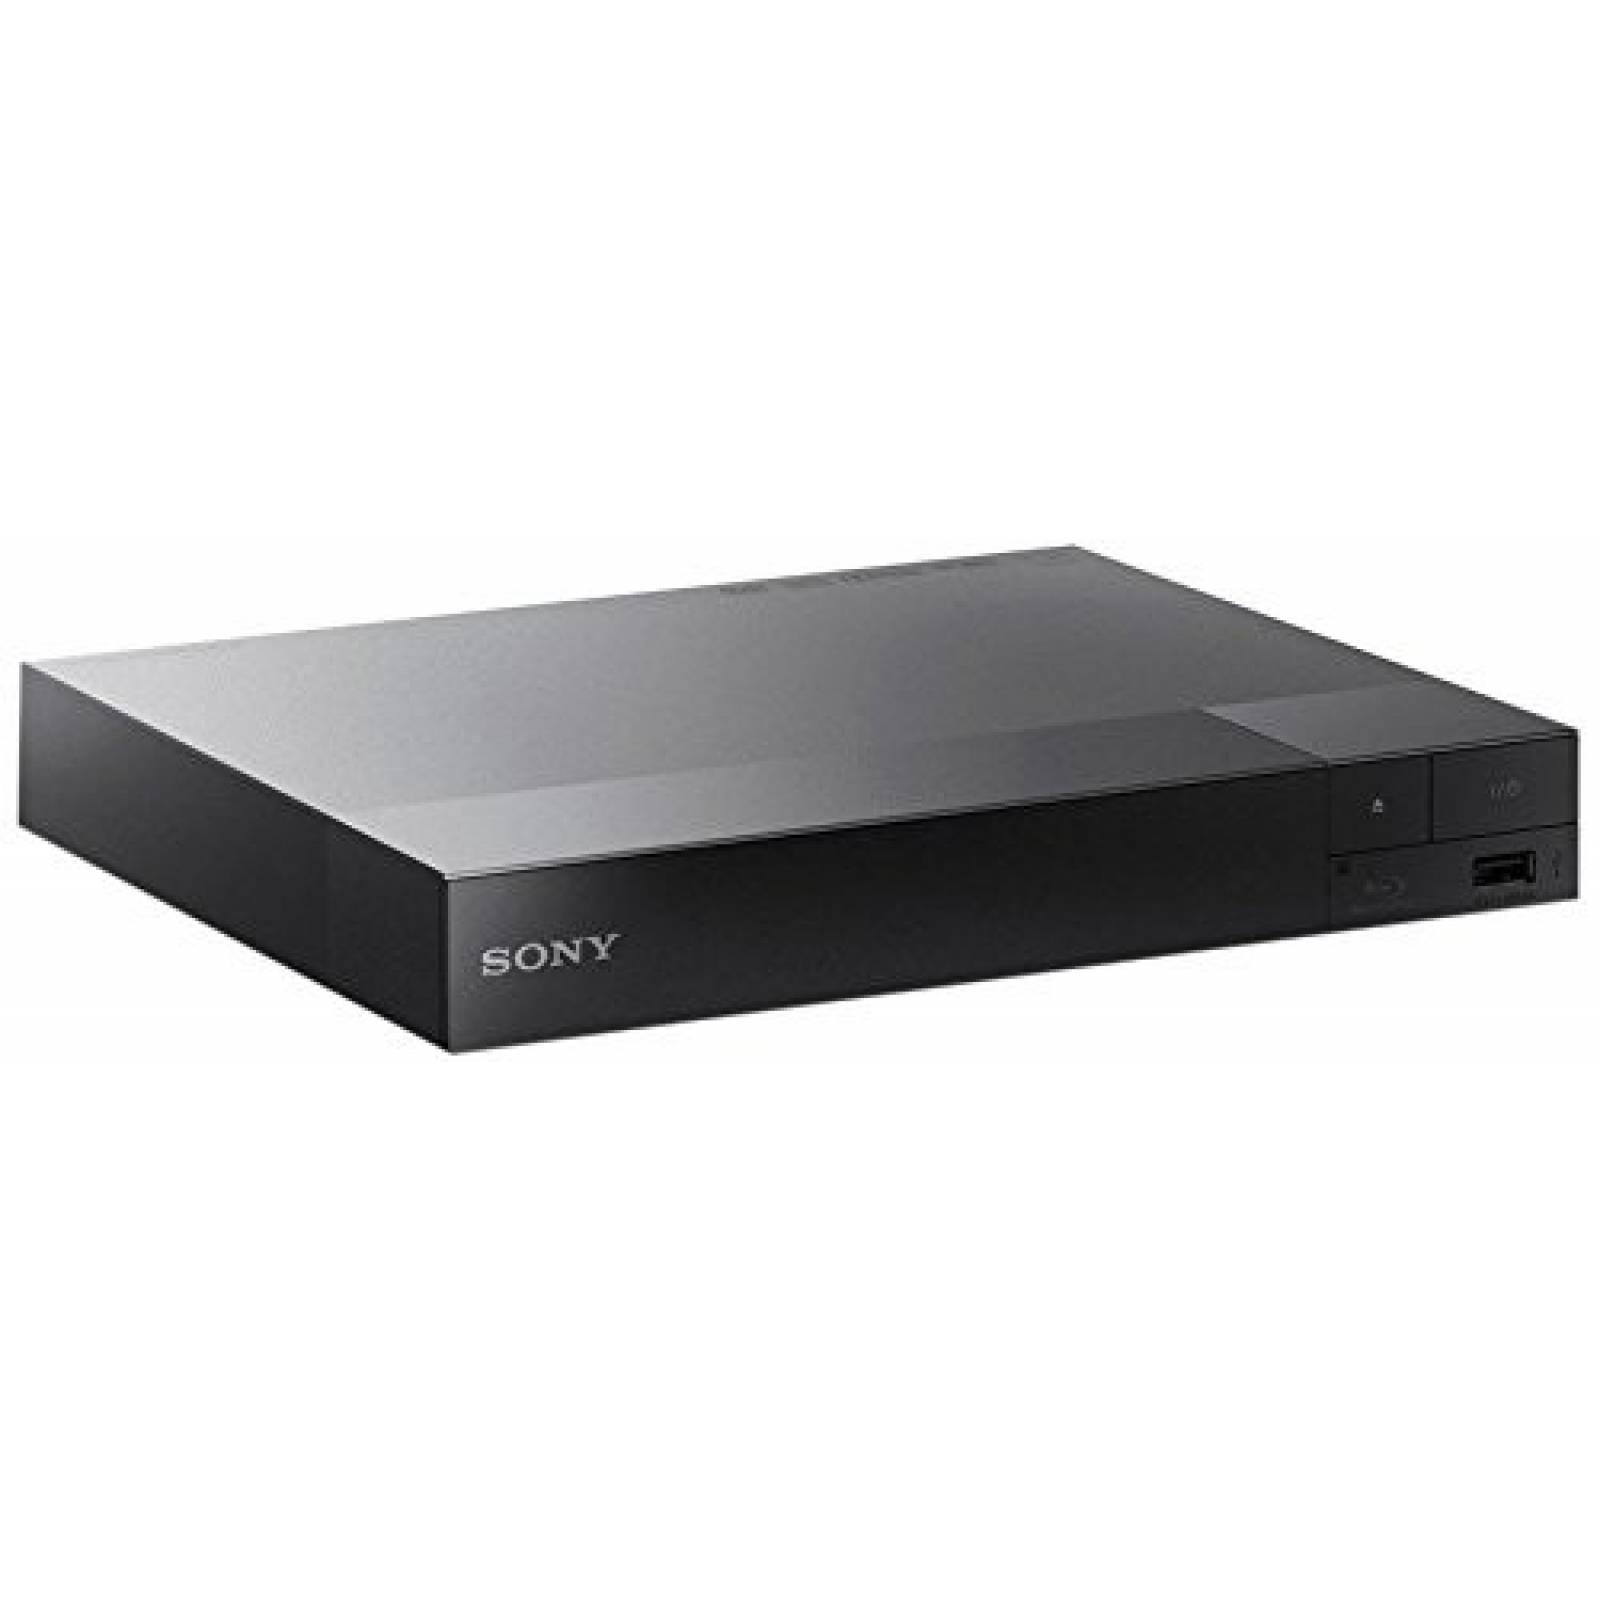 Reproductor de Blu-ray Sony BDP-S6500 Upgraded multi-region